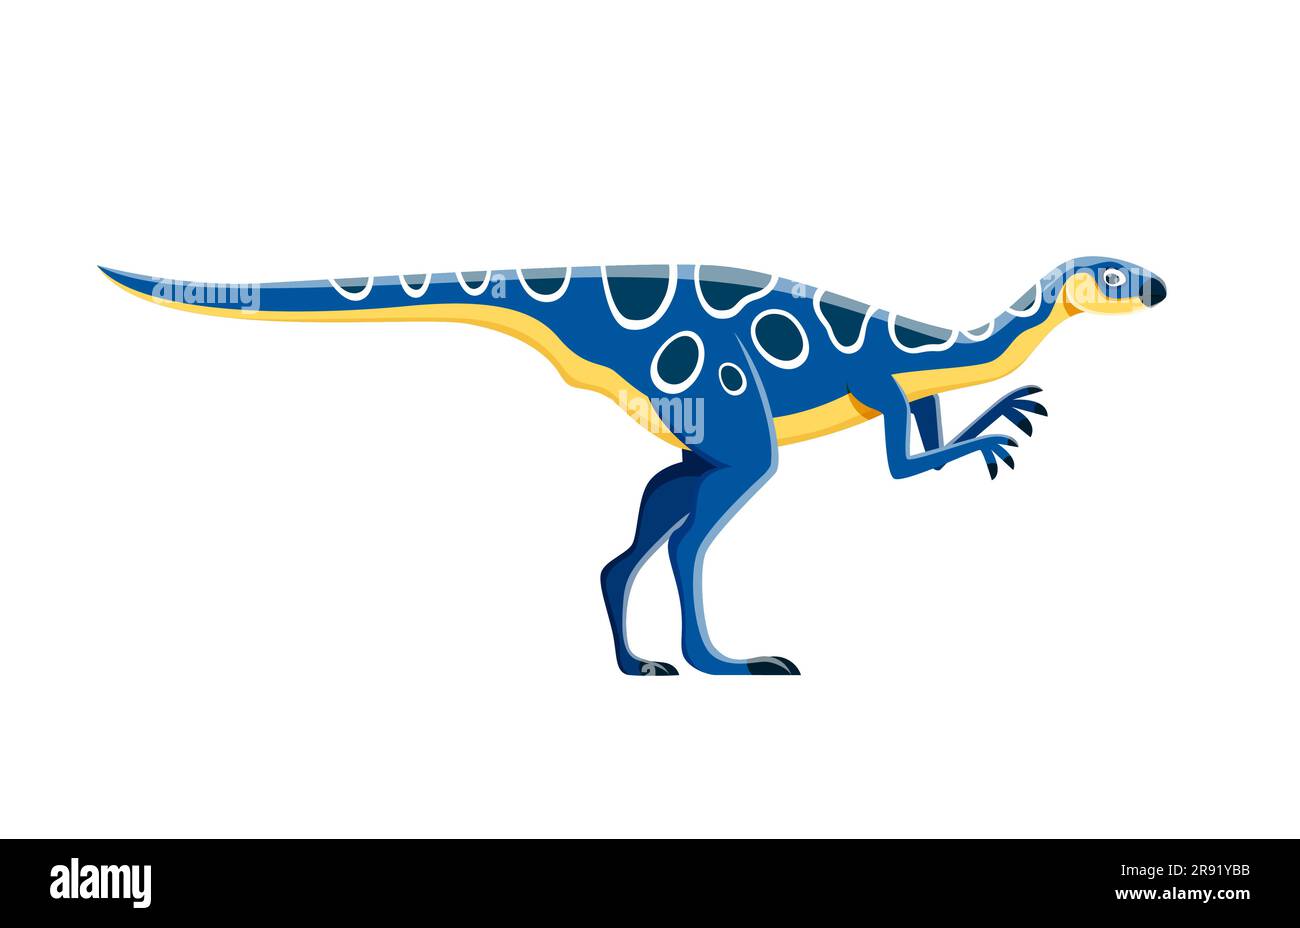 Dessin animé Hypsilophodon dinosaure personnage ou espèce éteinte dino, vecteur Jurassique animal. Drôle mignon dinosaure Hypsilophodon pour enfants Jurassic Park jeu ou personnage de dessin animé paléontologie Illustration de Vecteur